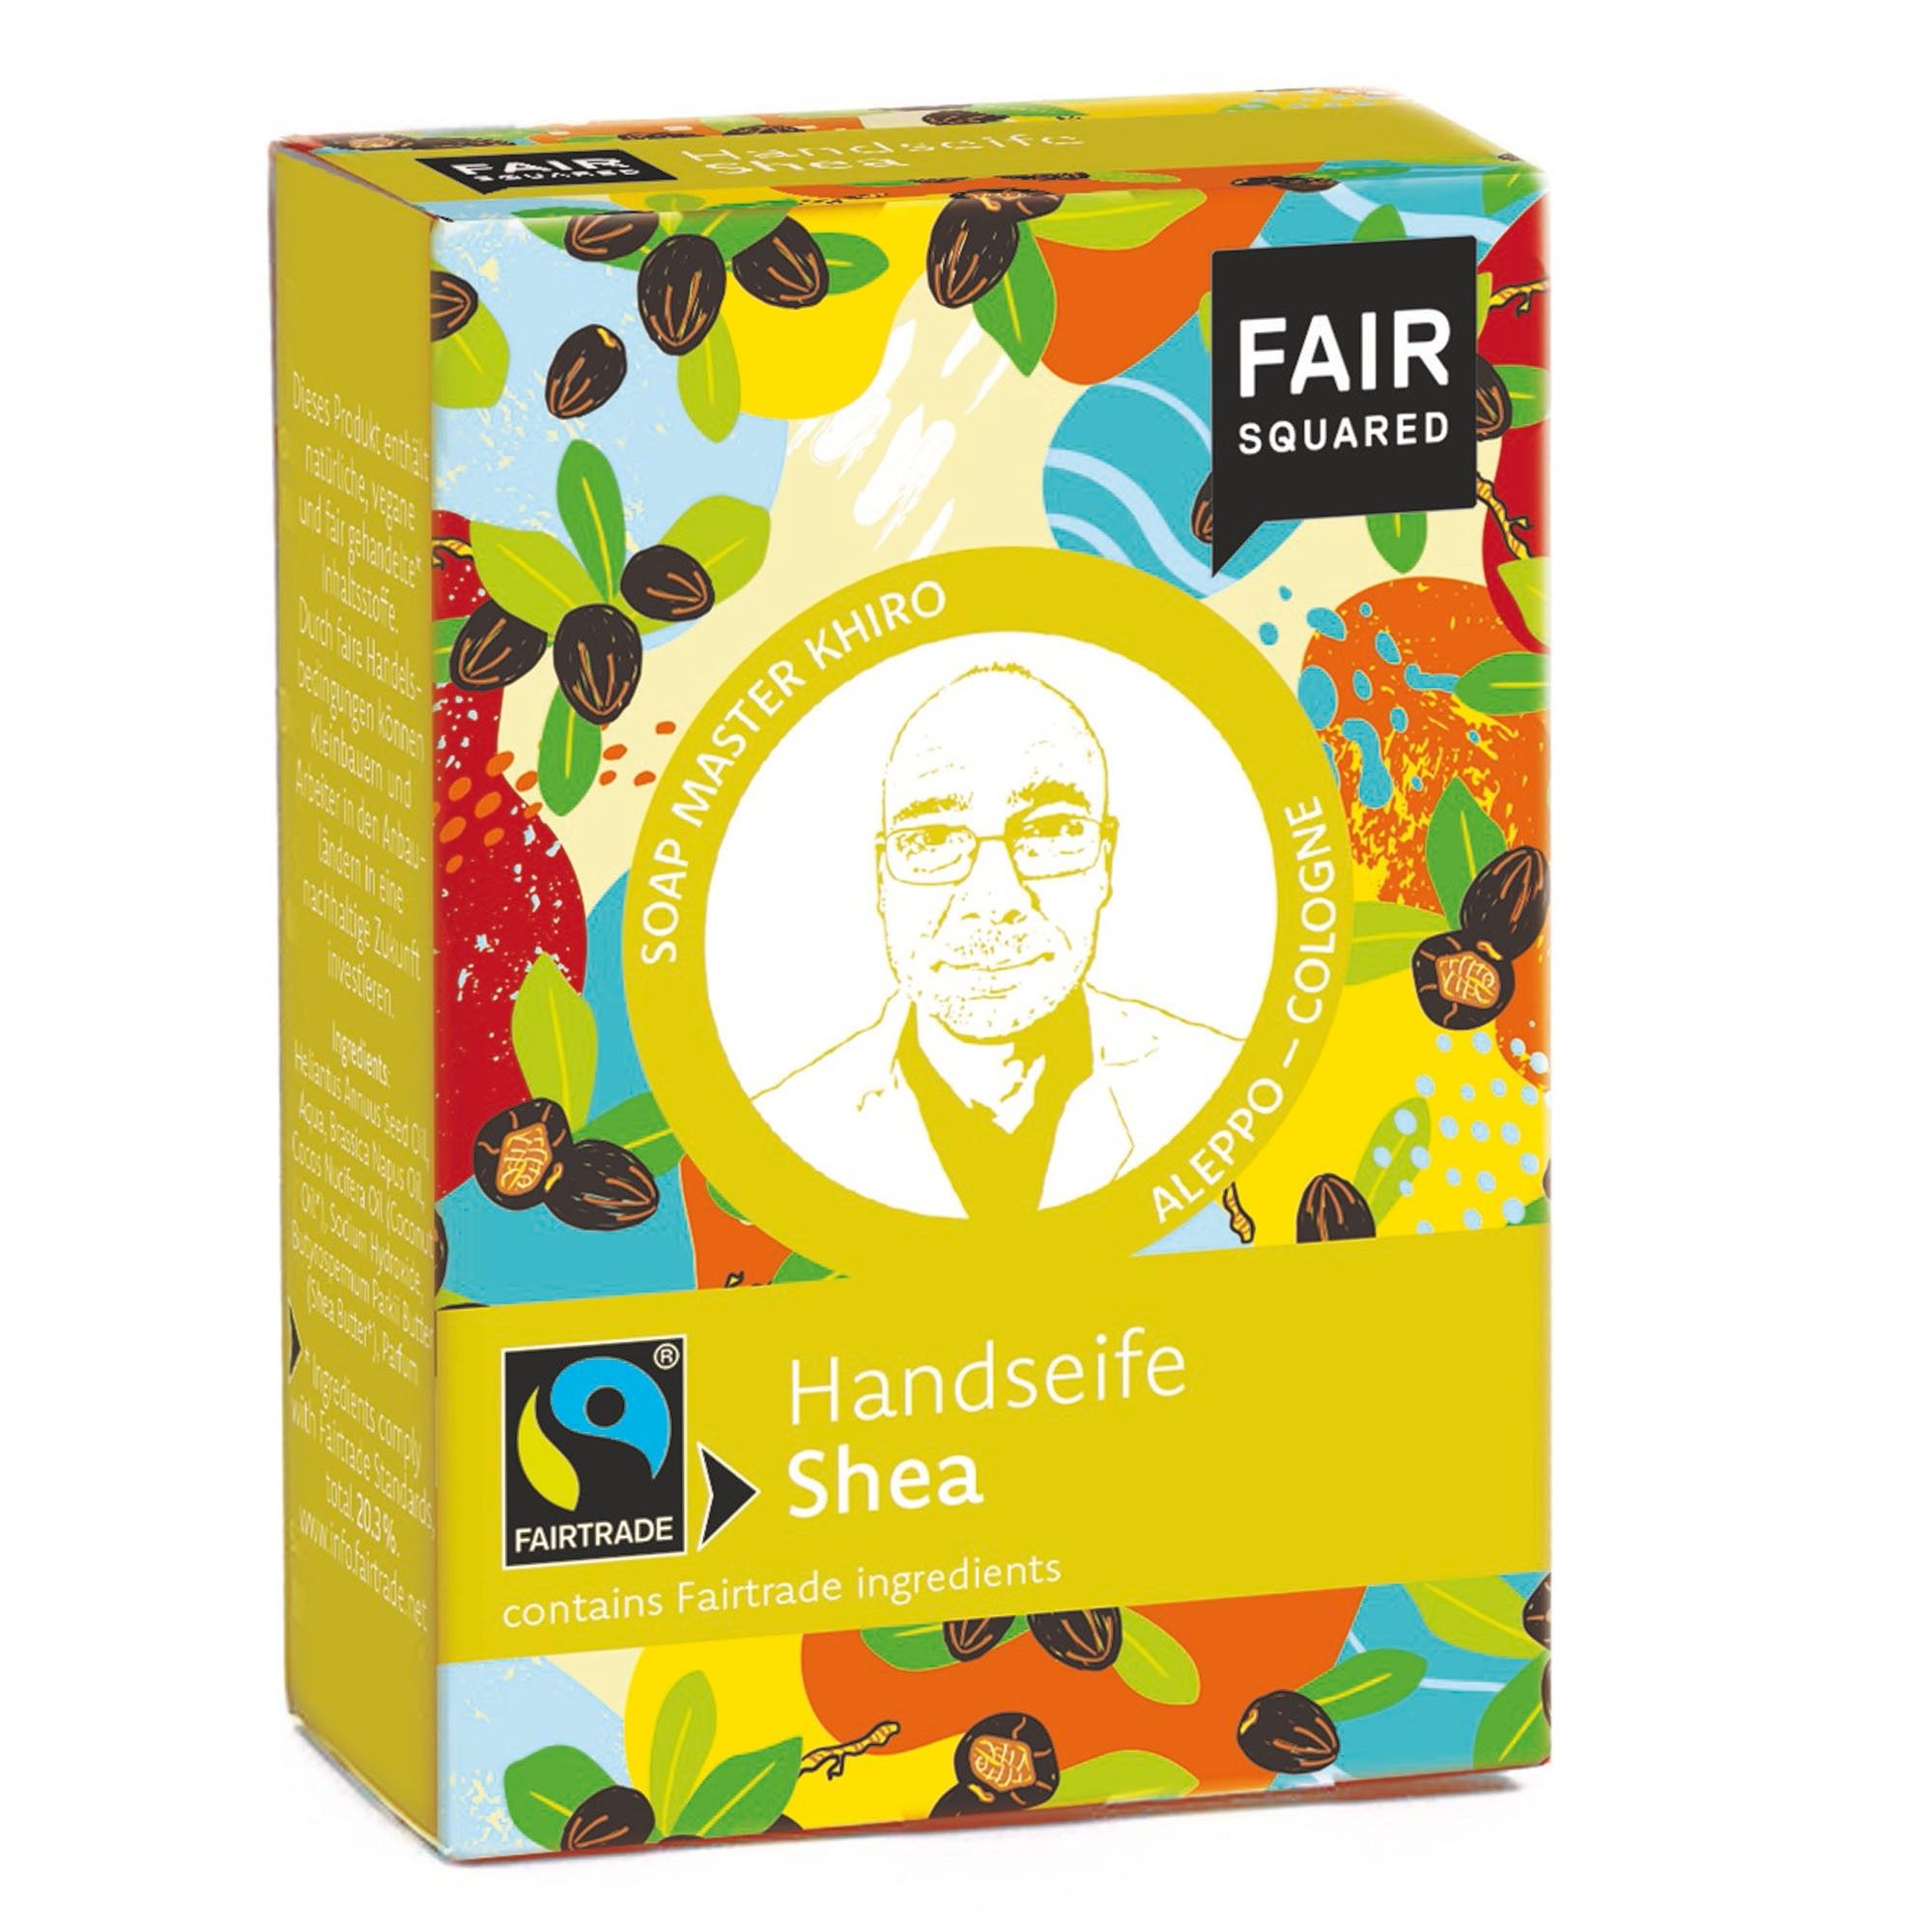 FAIR SQUARED Fairtrade Jubiläum Handseife Shea